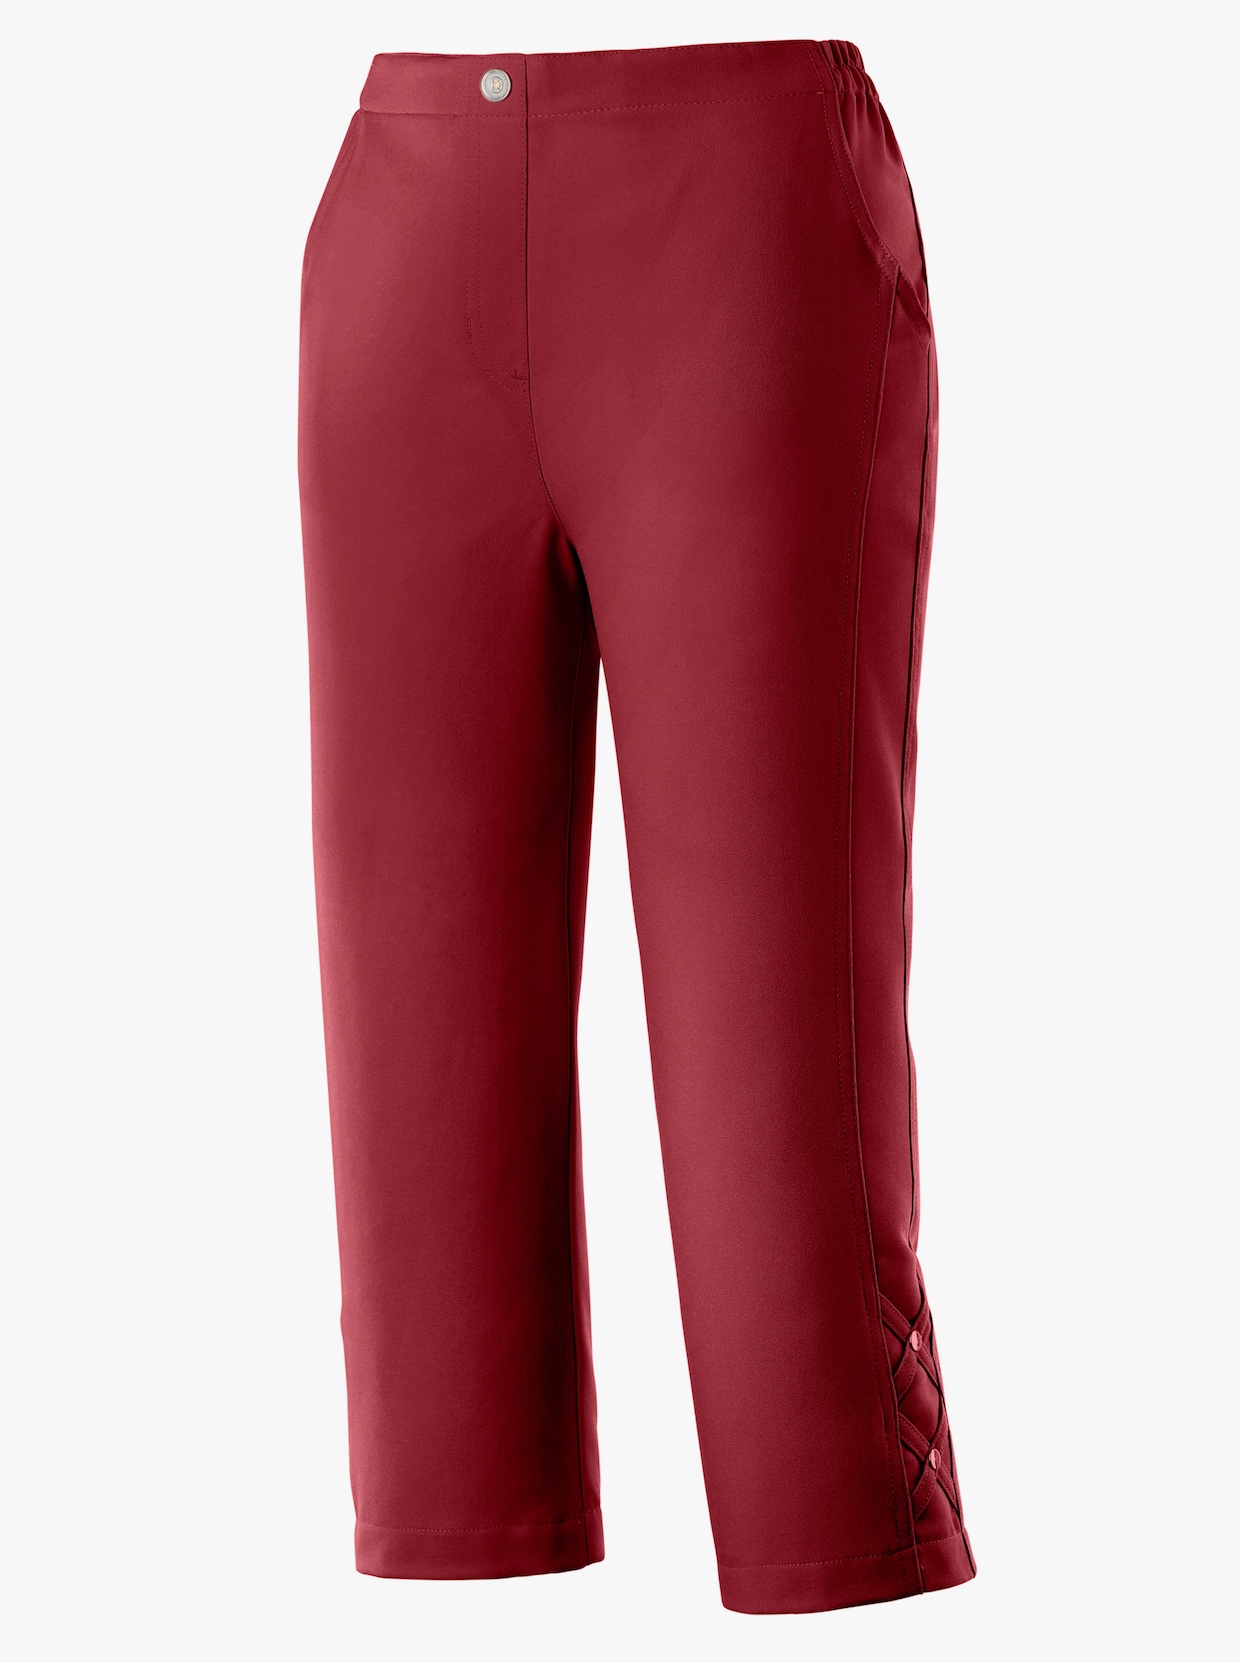 Capri nohavice - čerešňová červená